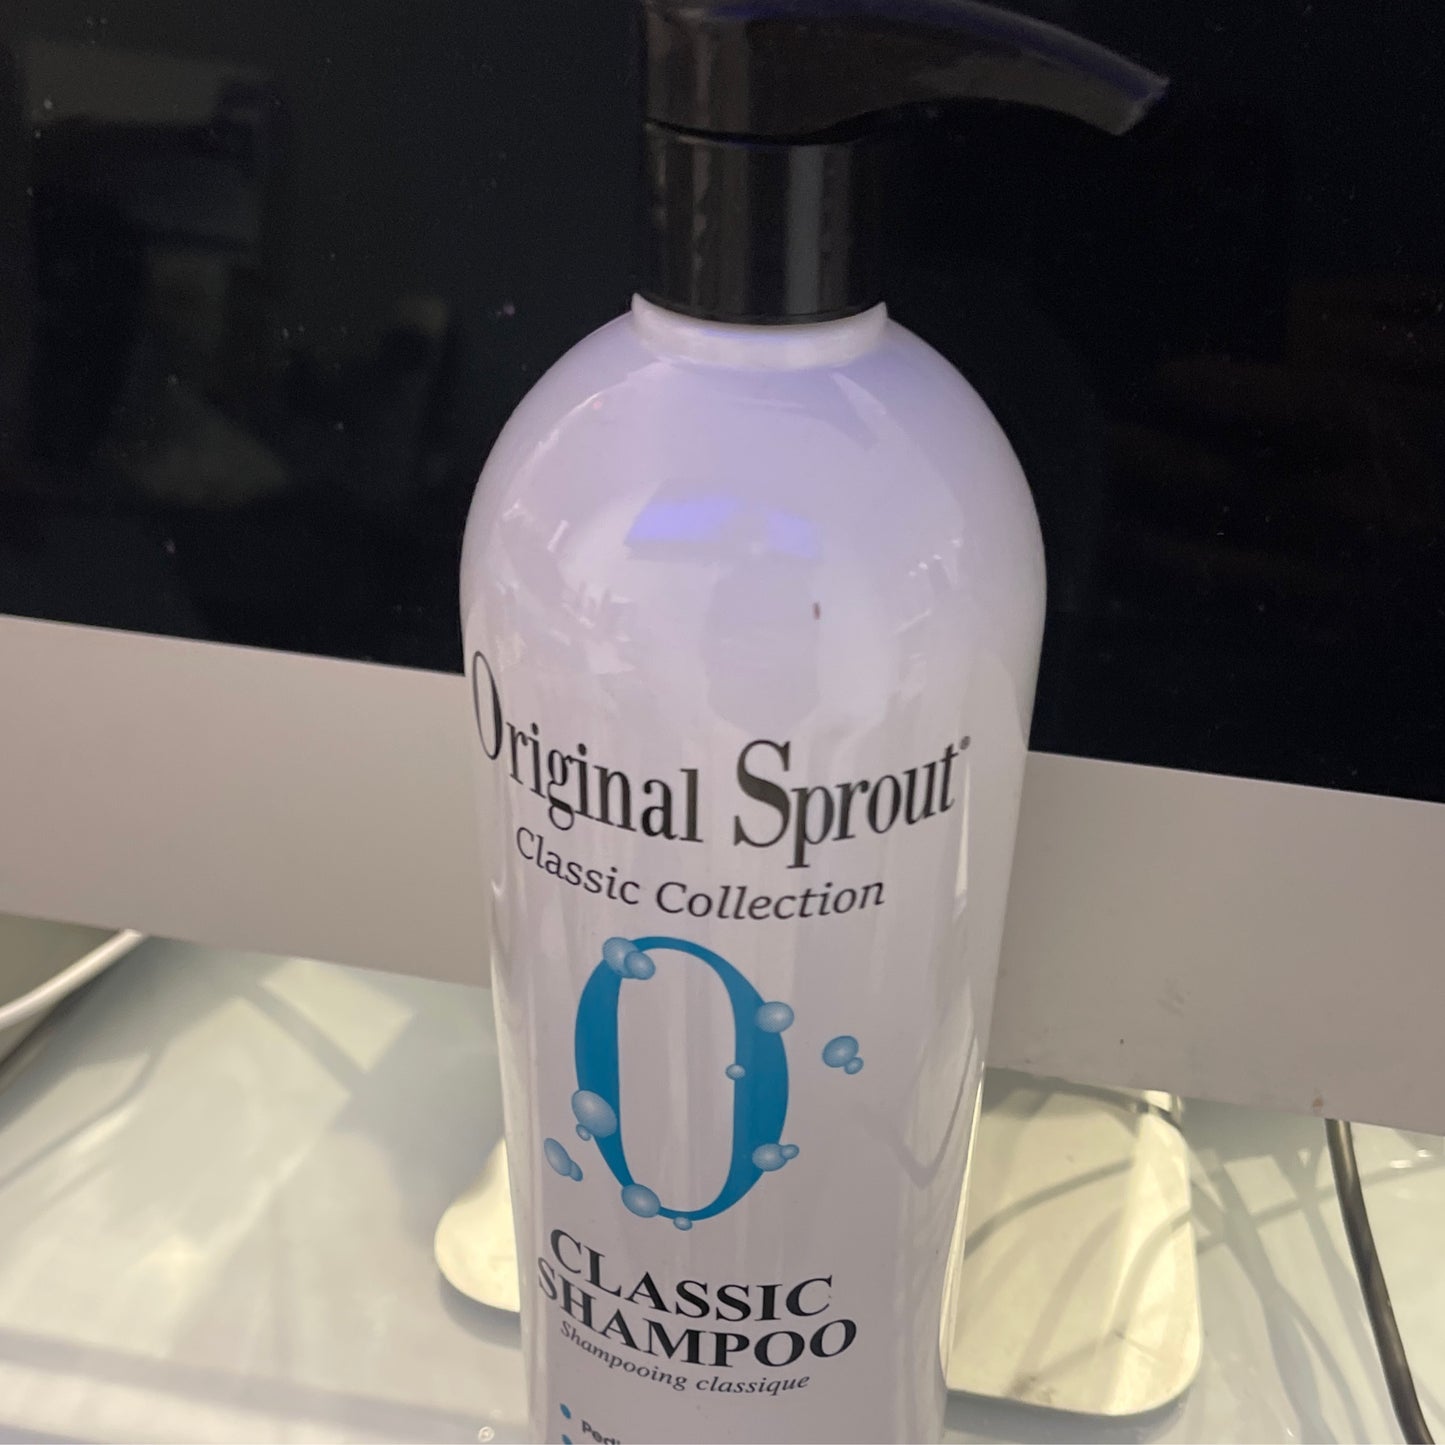 Original Sprout classic shampoo